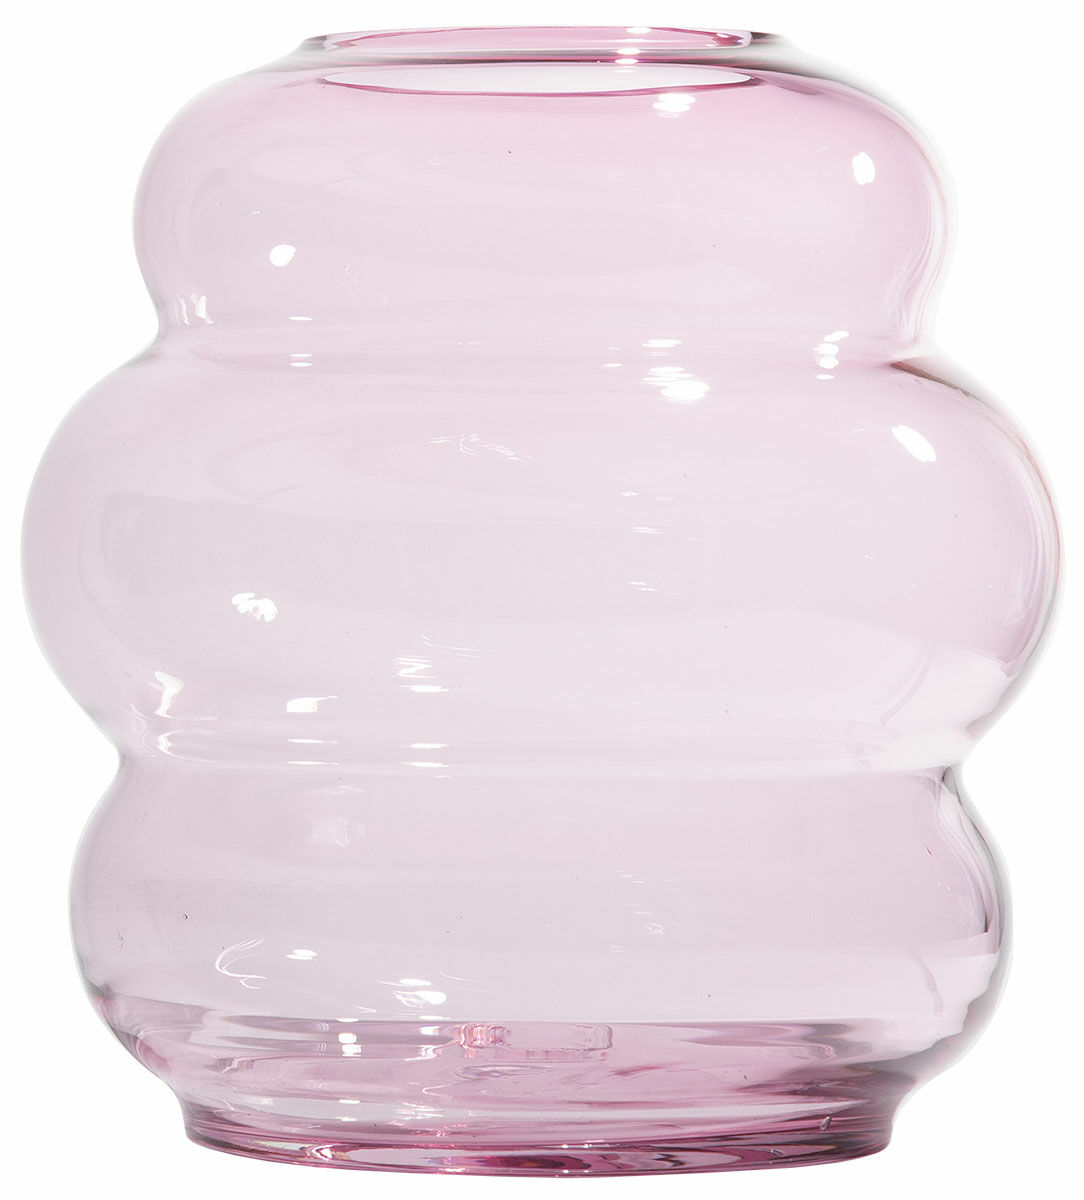 Crystal vase "Muse XL, Rubine" by Fundamental Berlin